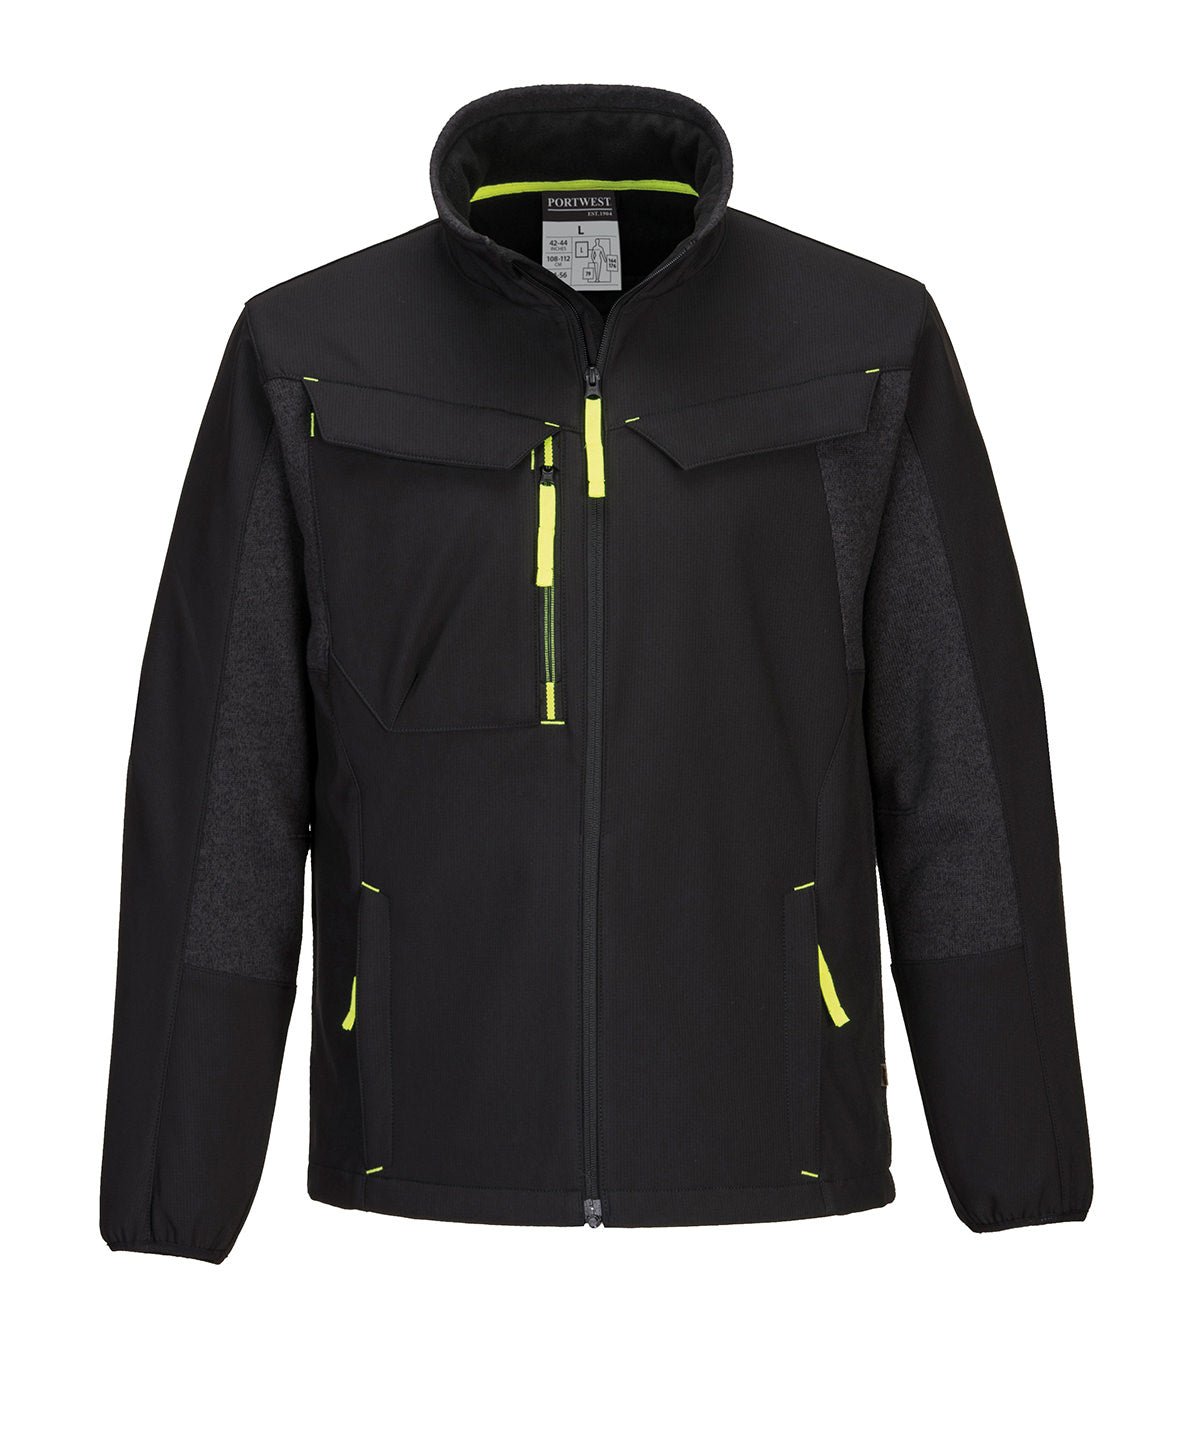 Portwest WX3 Eco Hybrid softshell jacket